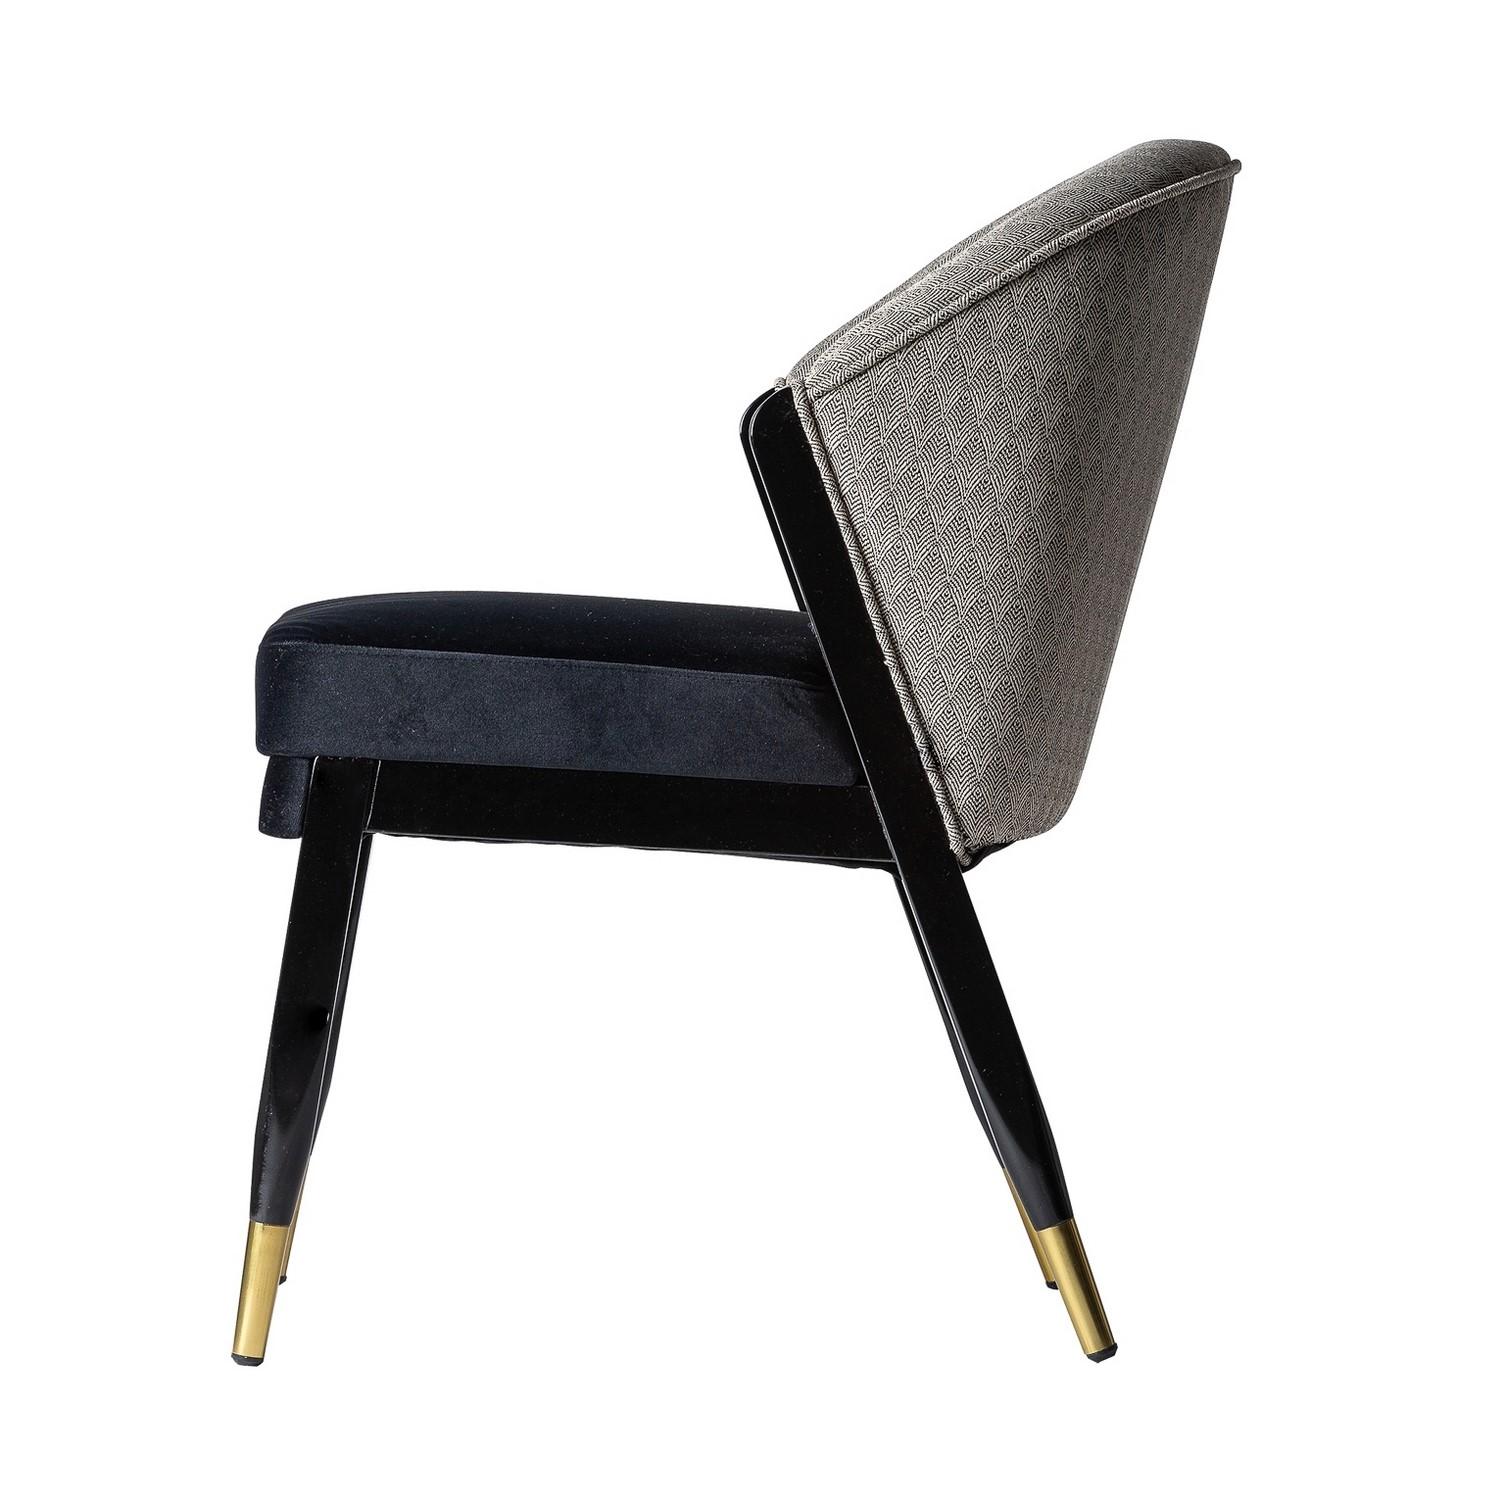 Chaise de style Midcentury avec une structure en bois laqué noir et des pieds dorés, agrémentée d'un dossier en tissu graphique et d'une assise en velours. Autour de la table à manger, il sera parfait près de votre bureau ou de votre coiffeuse